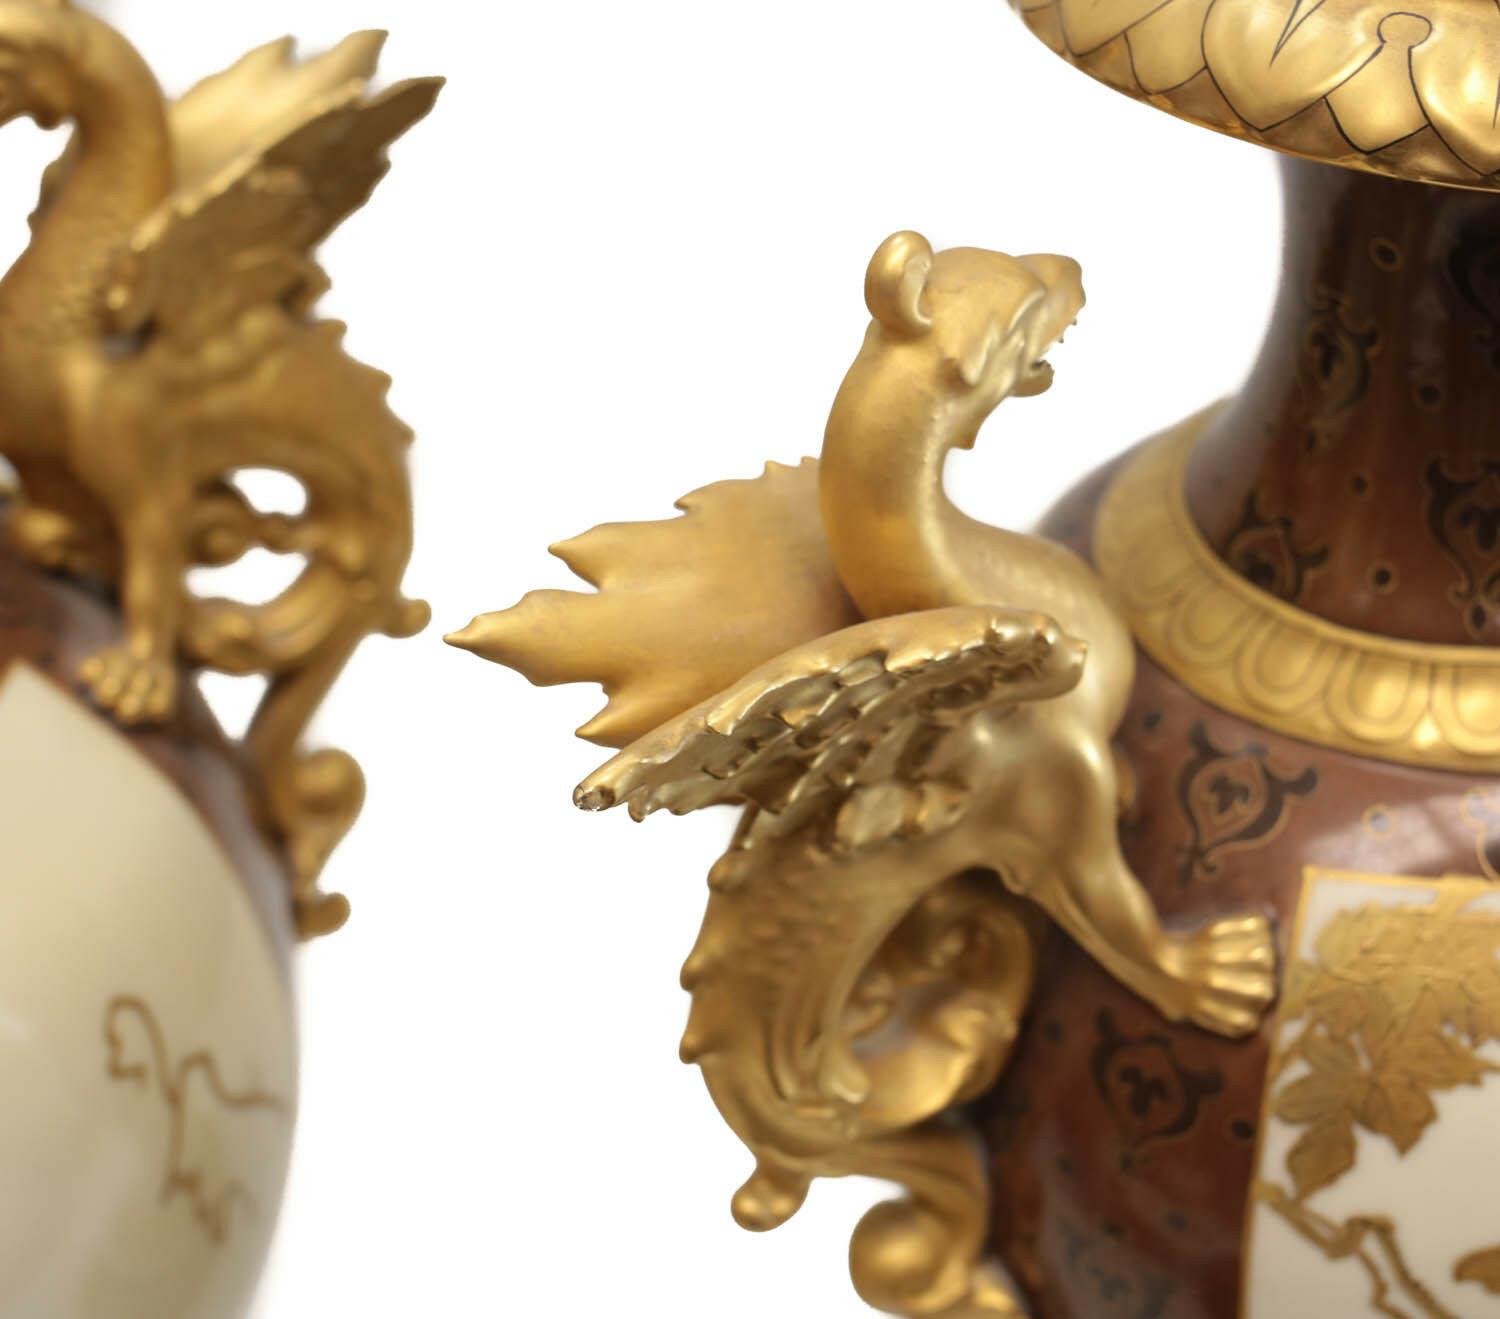 Pair of Pirkenhammer Porcelain Aesthetic Gold Encrusted Dragon Vases, circa 1880 For Sale 1